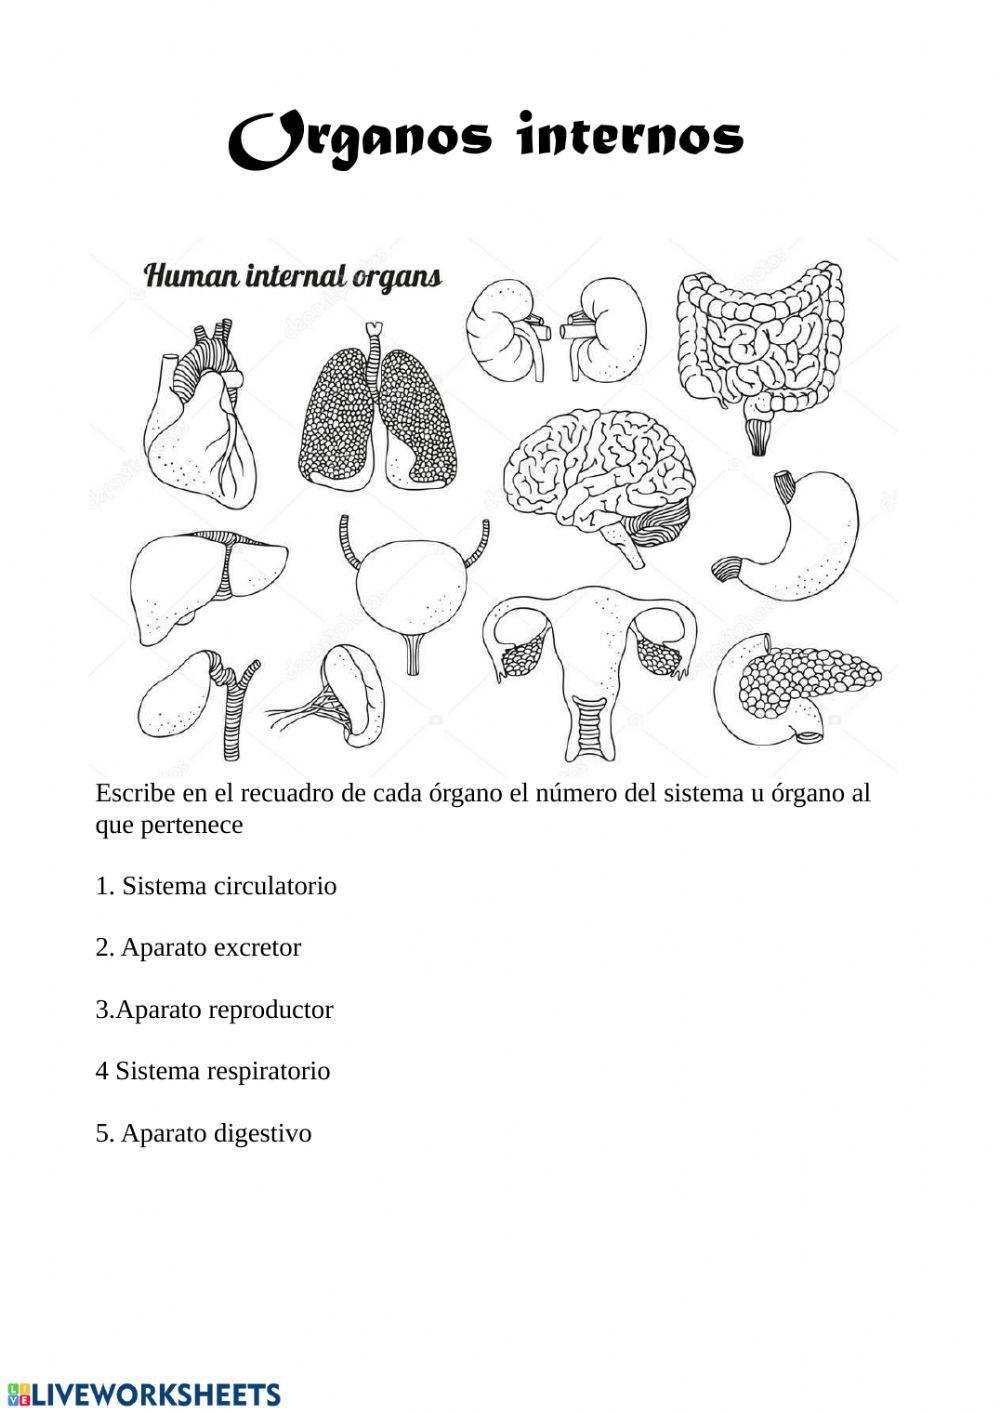 Organos internos